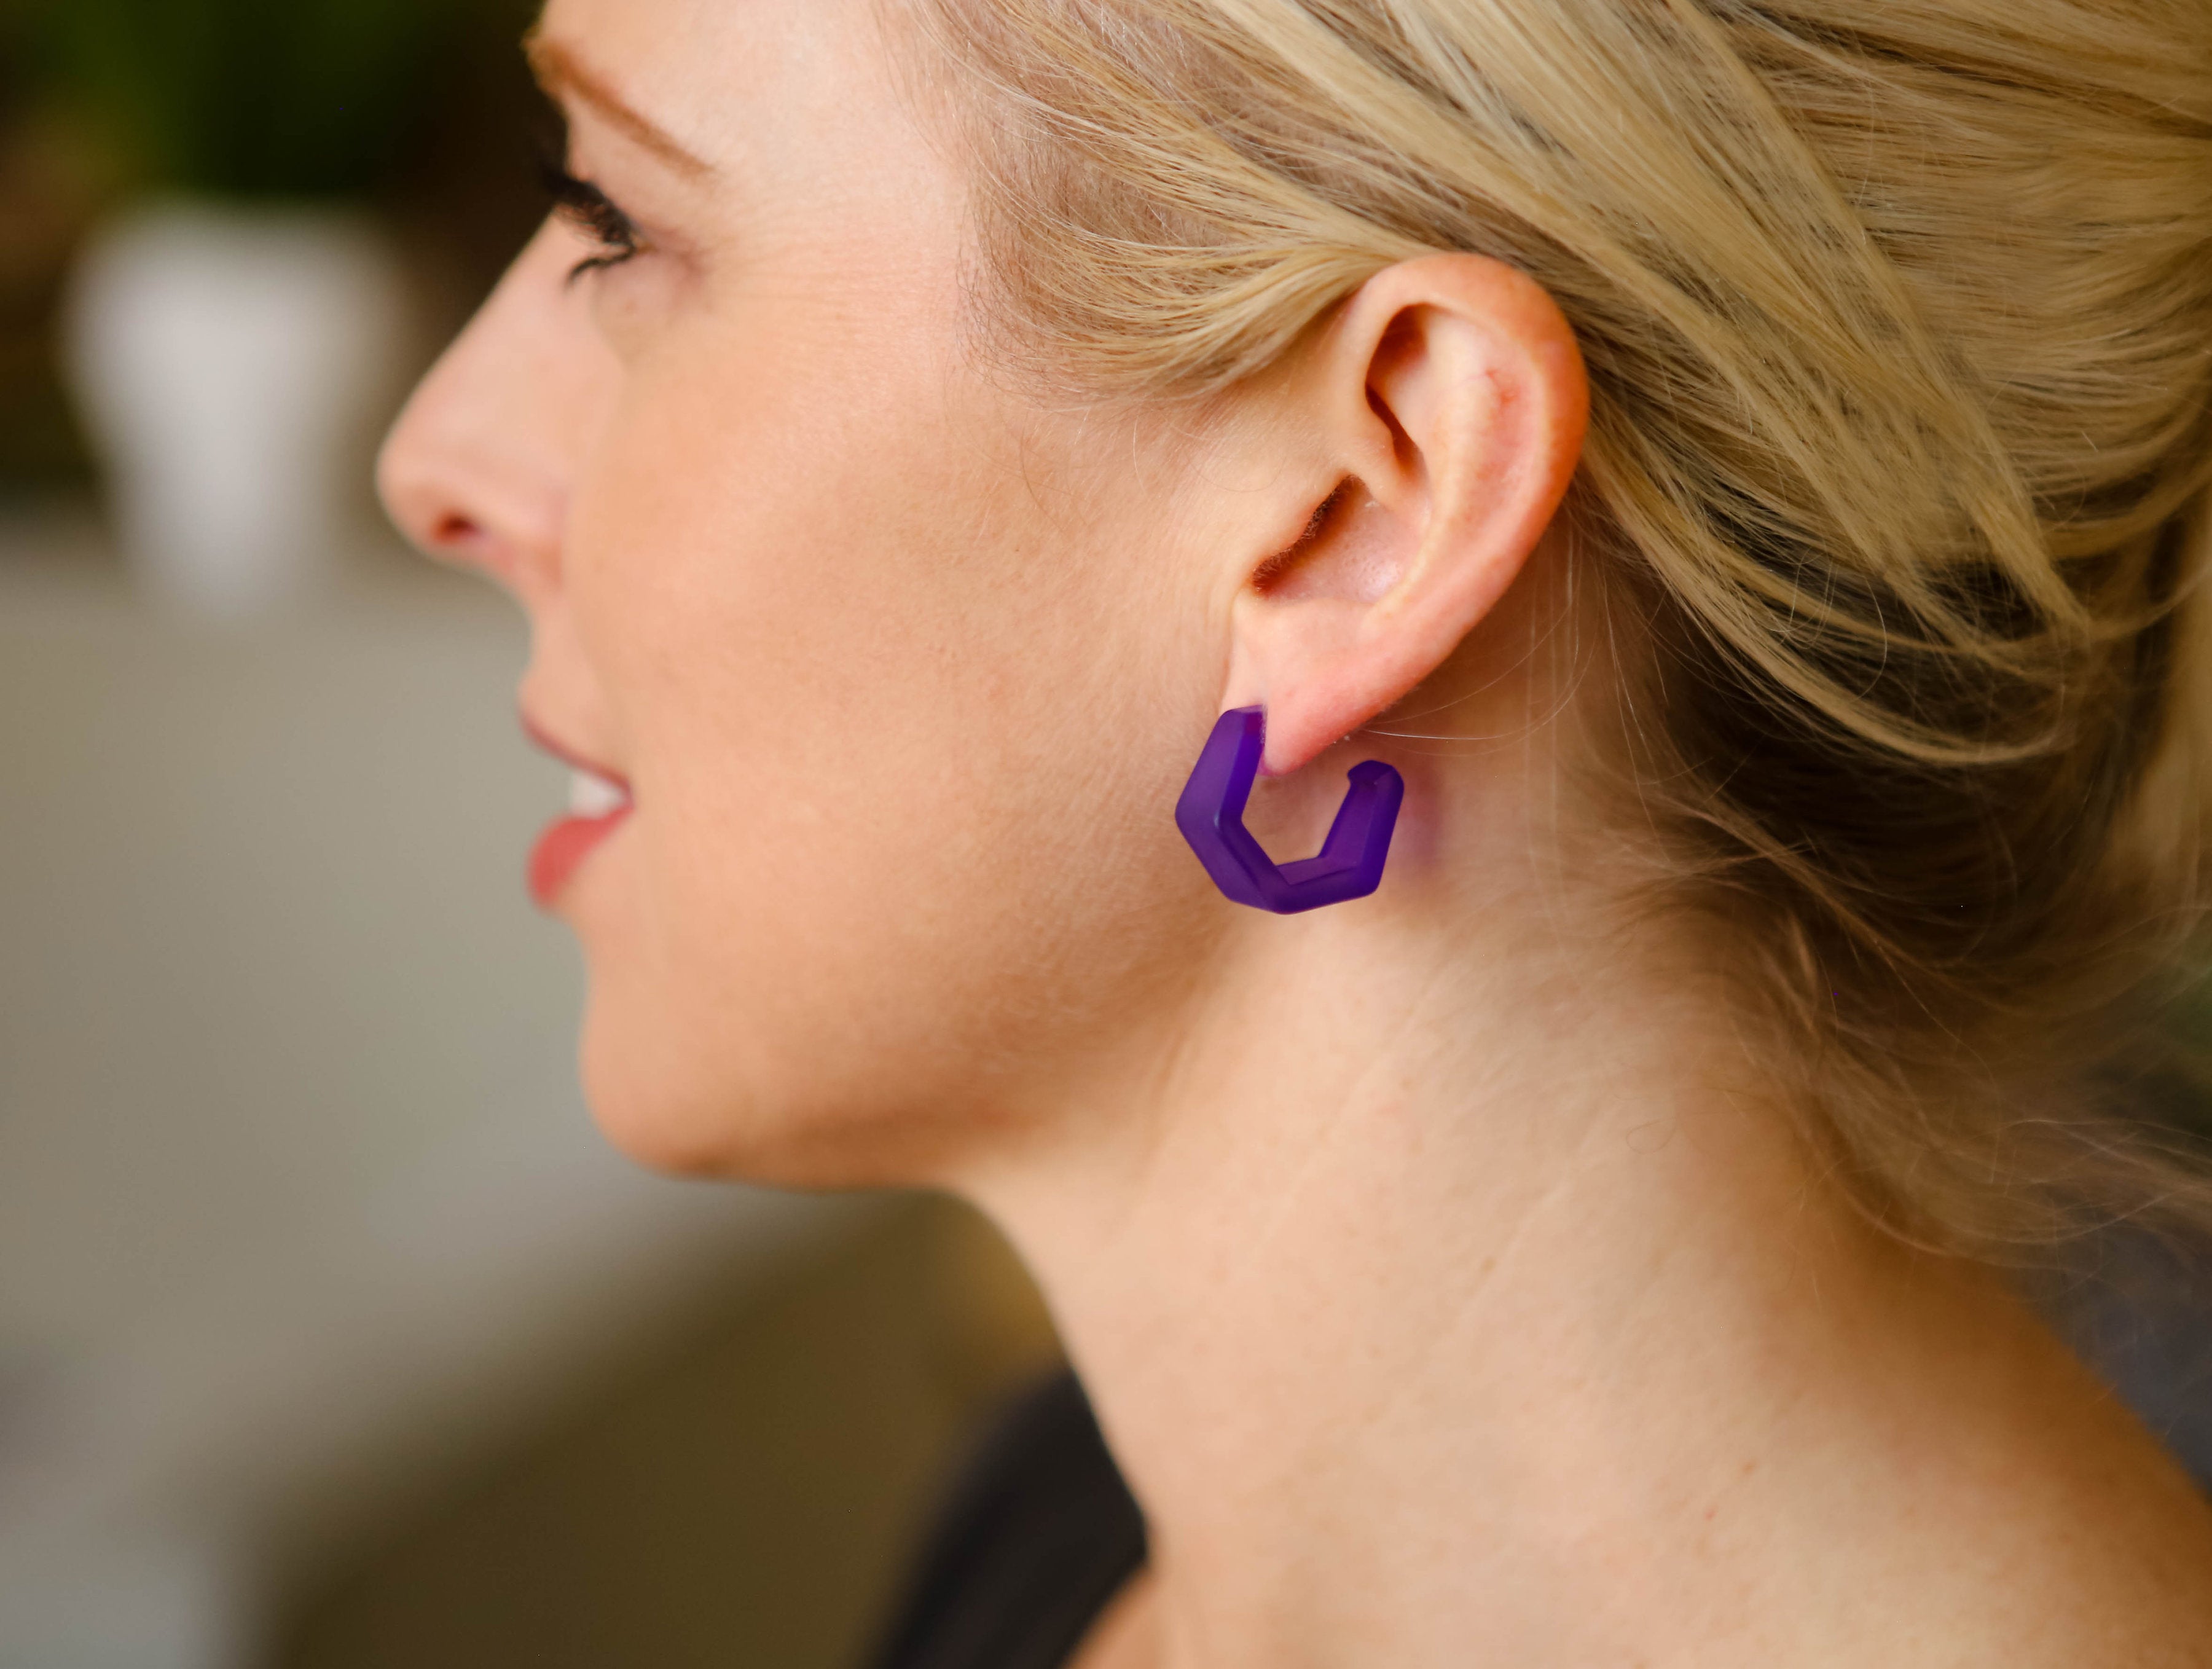 geometric earrings